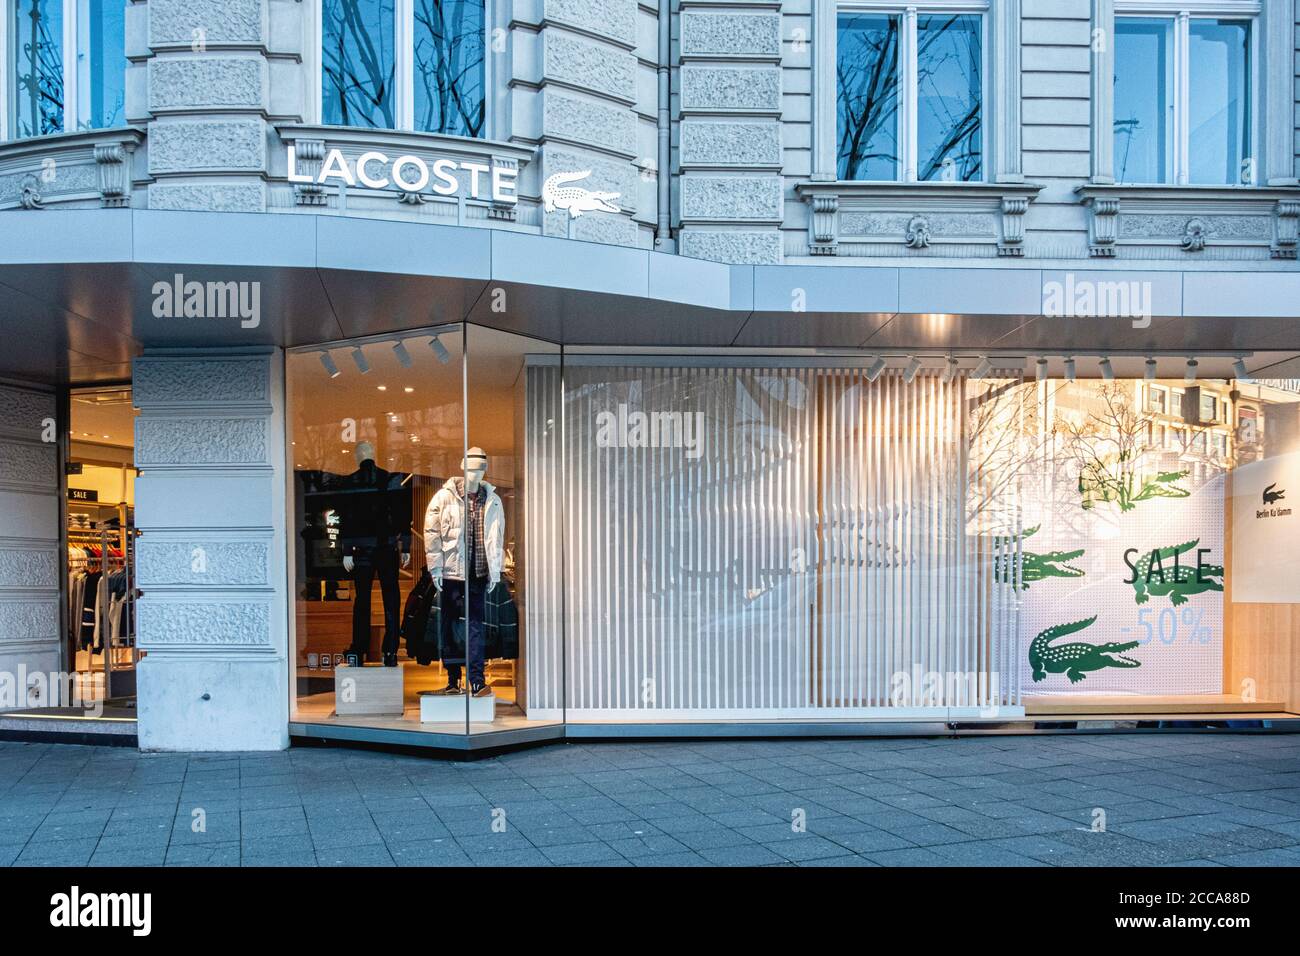 Lacoste Fashion Retailer selld Bekleidung & Accessoires für Herren & Damen,  Kurfürstendamm 213, Charlottenburg, Berlin Stockfotografie - Alamy